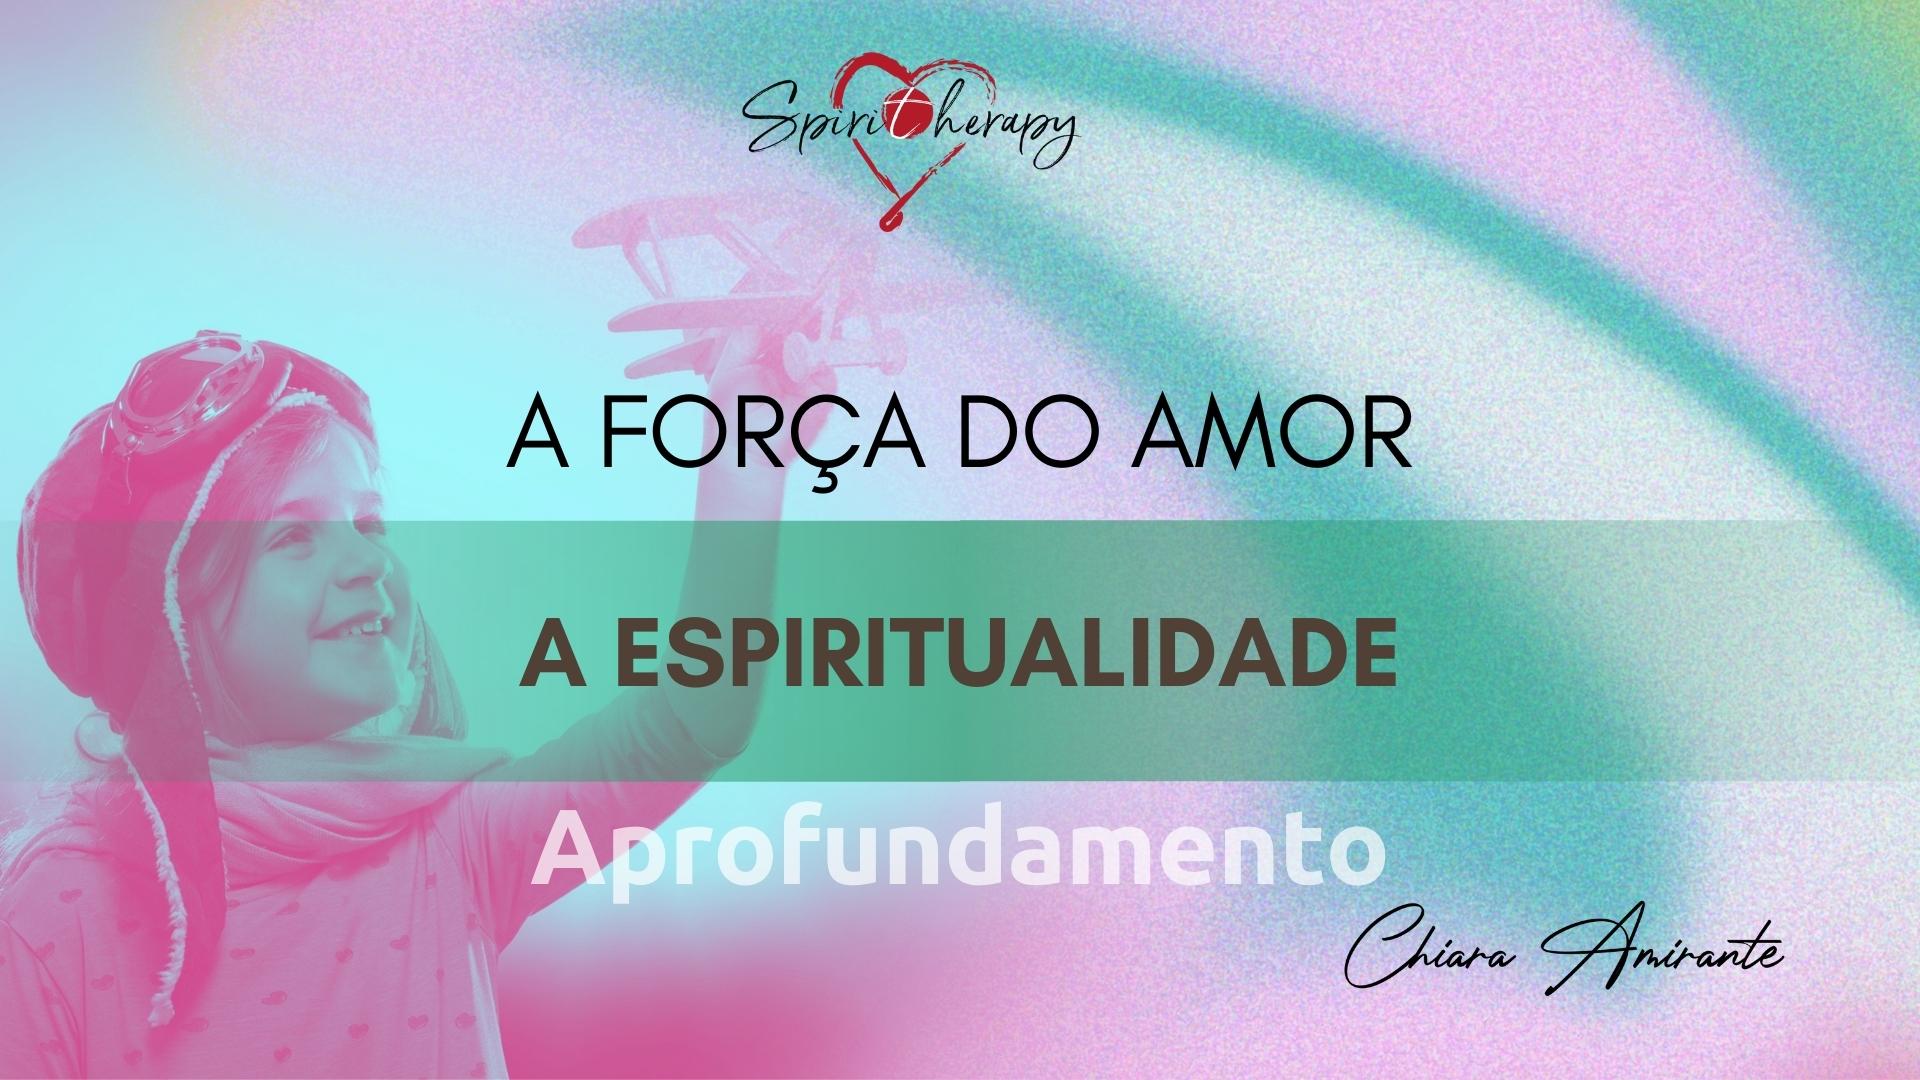 A FORÇA DO AMOR - A espiritualidade - Chiara Amirante